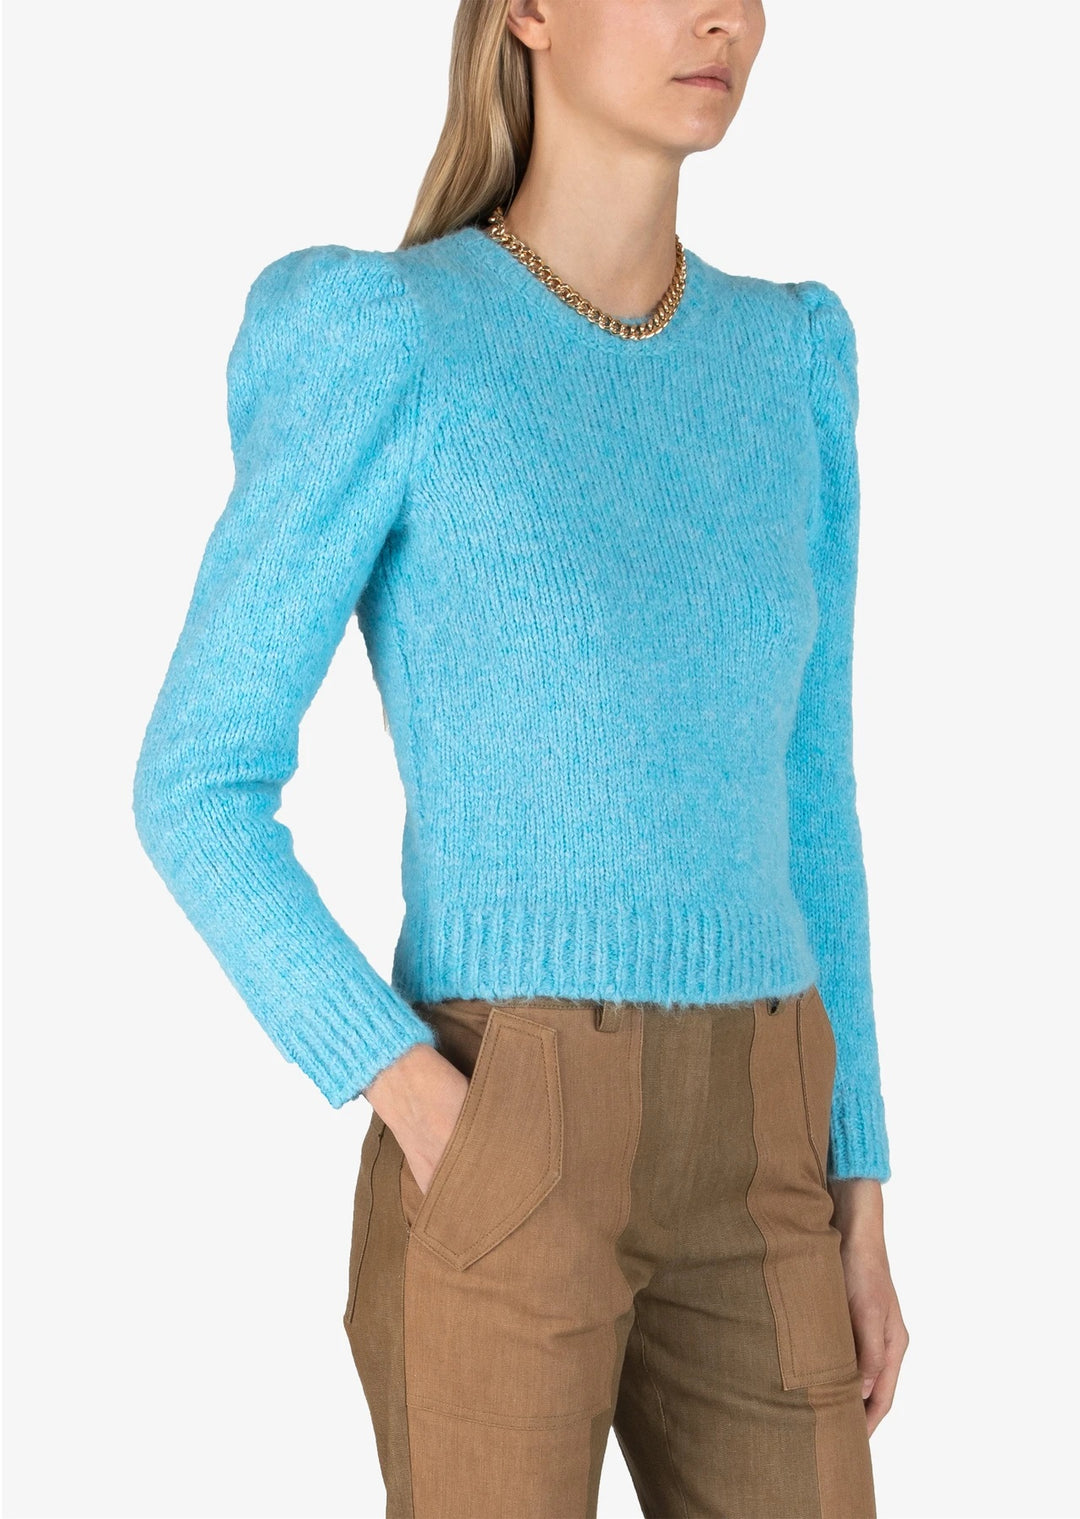 Derek Lam 10 Crosby - Locken Puff Sleeve Sweater in Light Blue